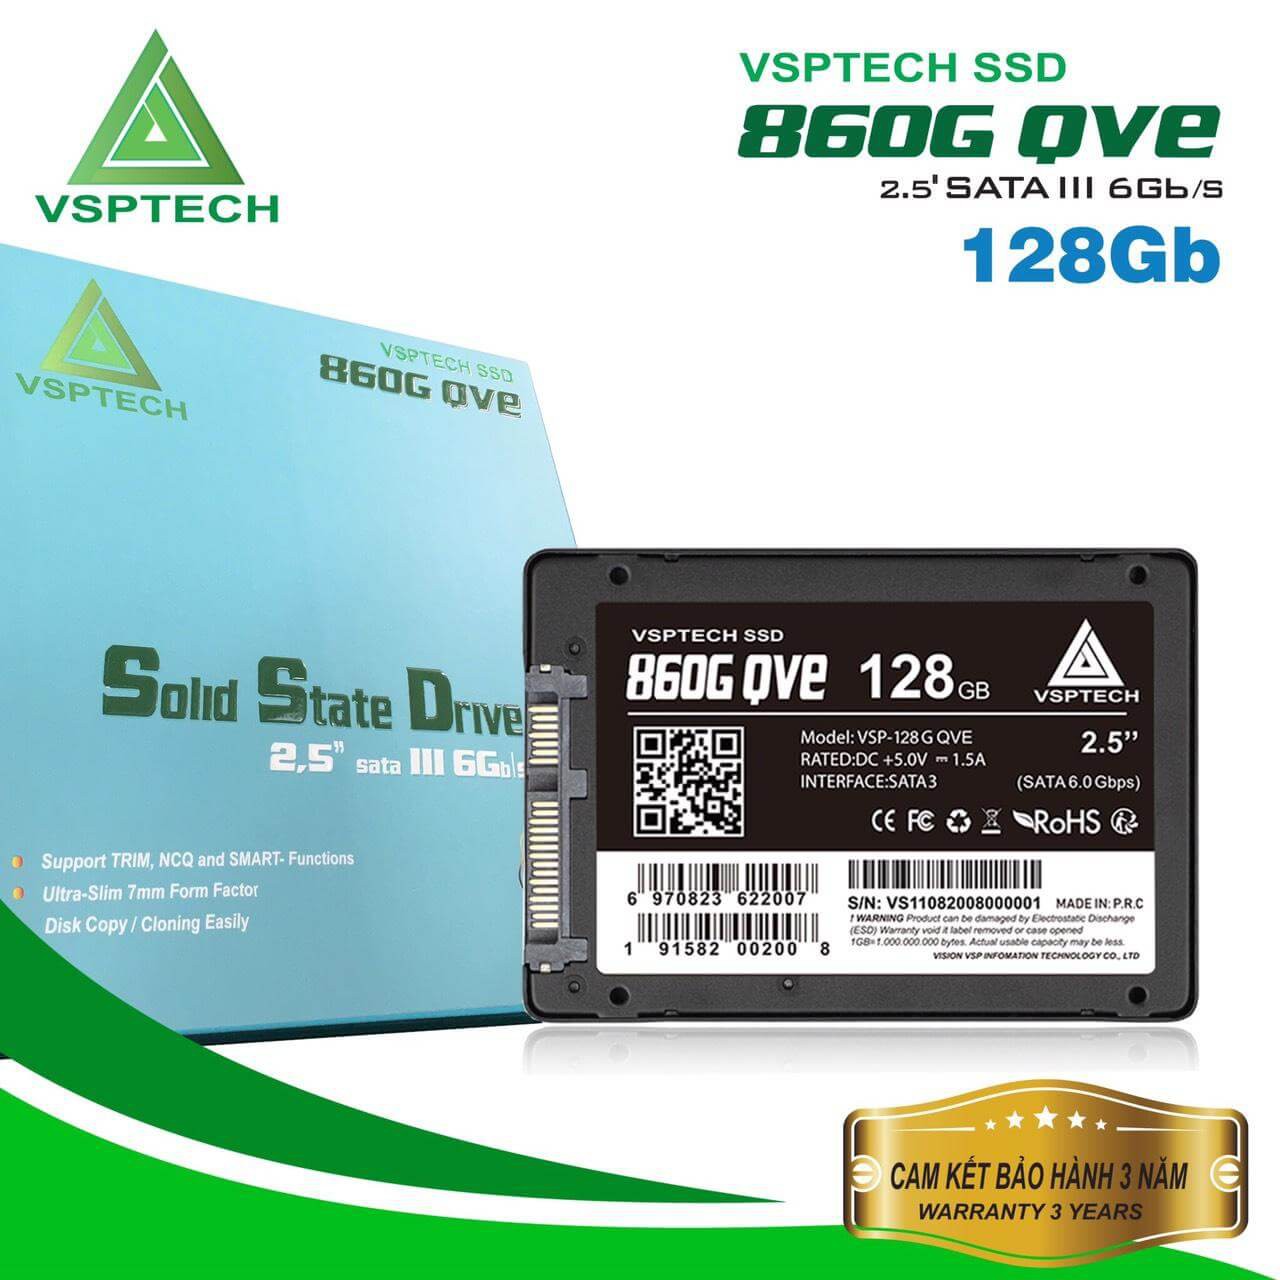 Ổ cứng SSD VSPTECH 860G QVE dung lượng 128GB, cài sẵn win 10